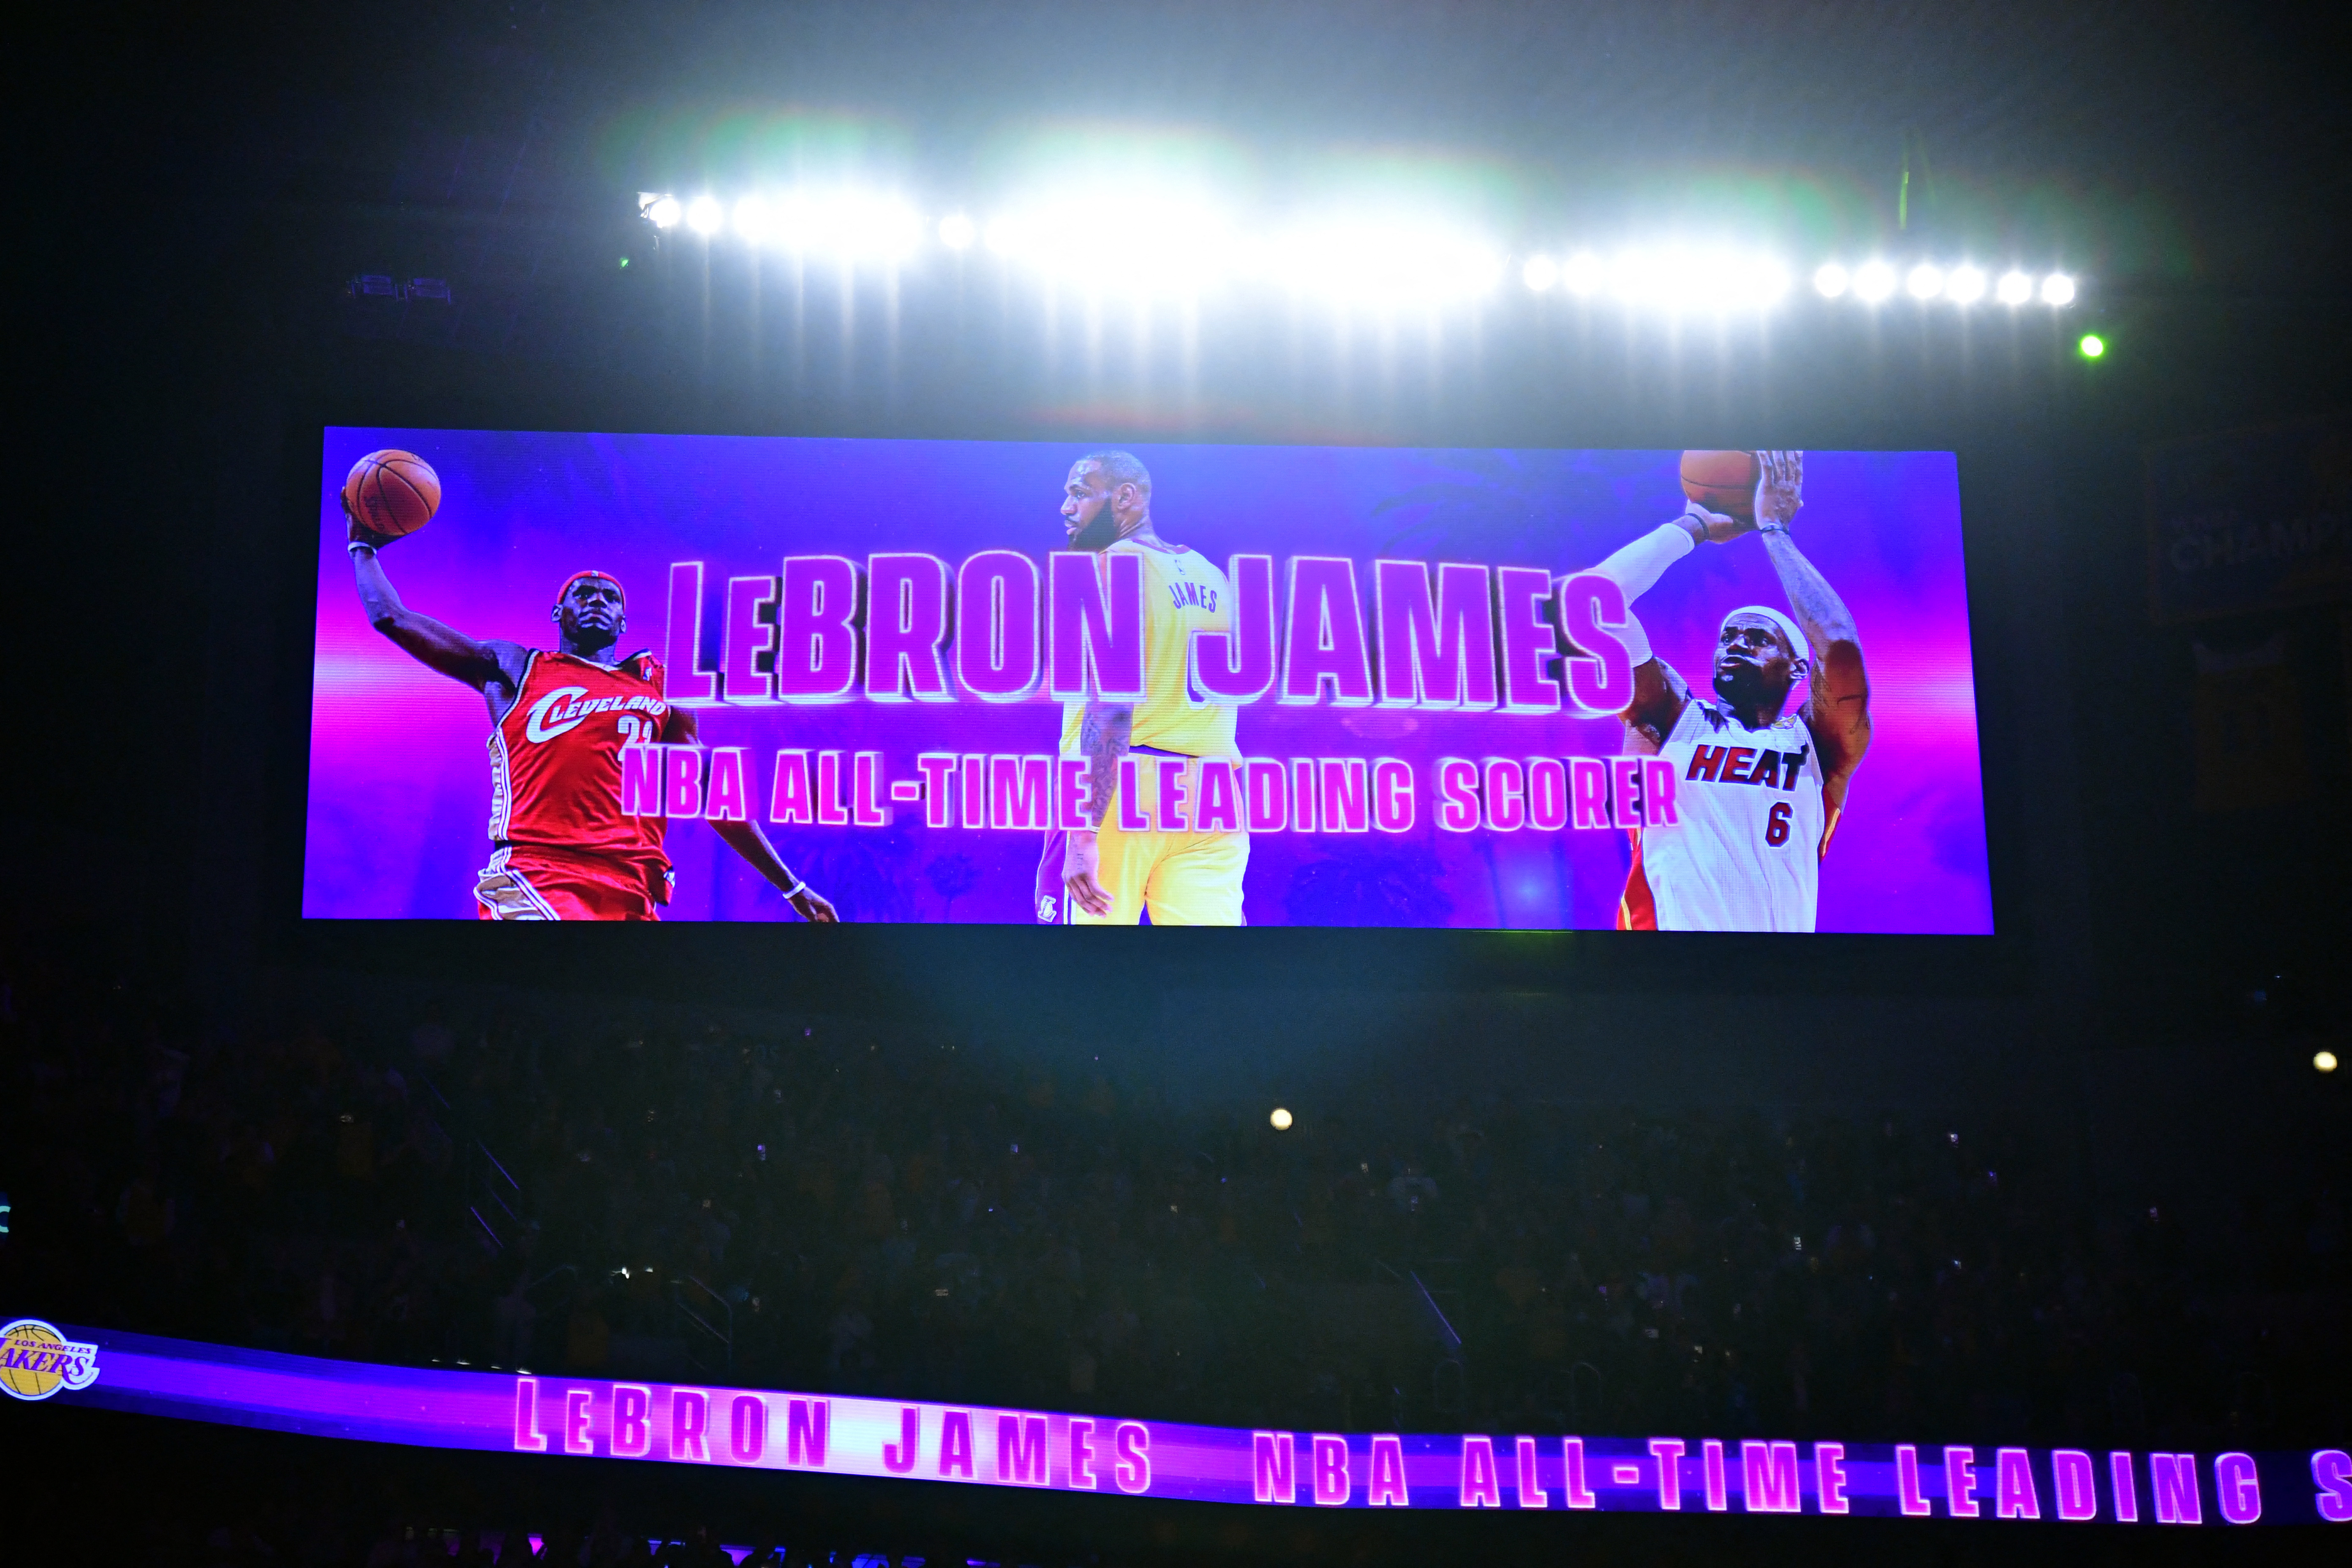 NBA: Oklahoma City Thunder at Los Angeles Lakers